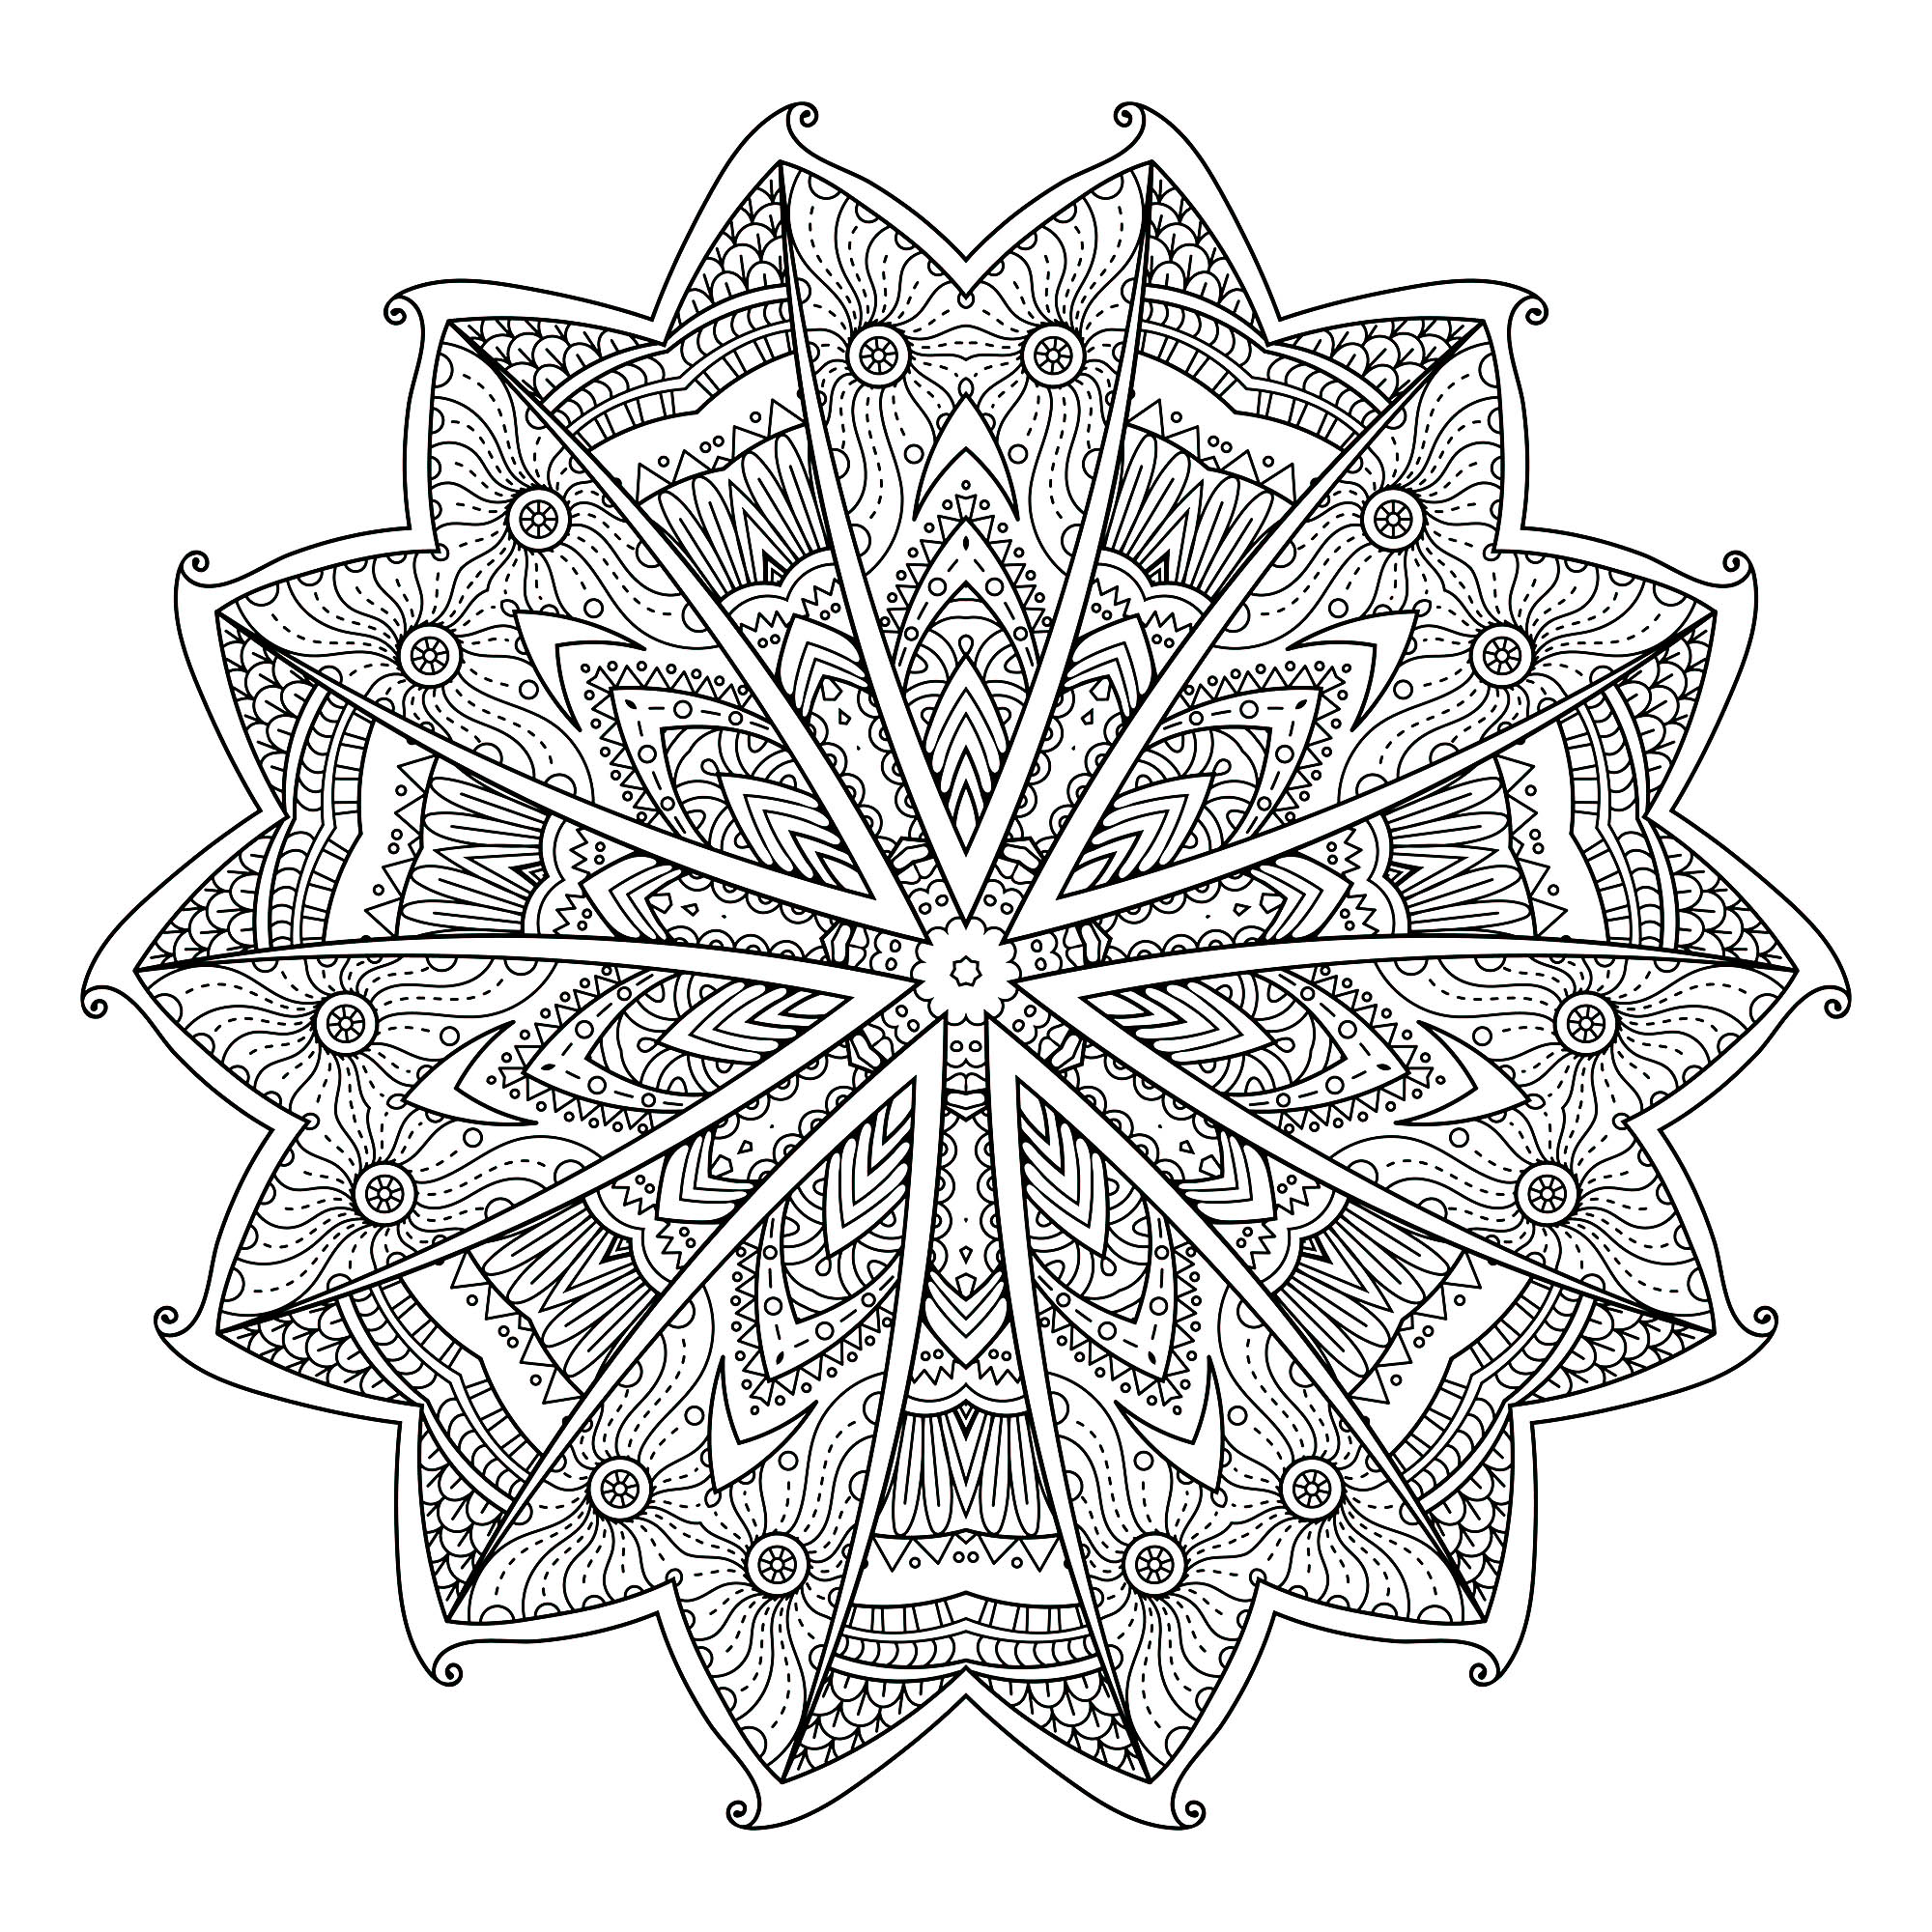 Gli elementi vegetali spesso si abbinano molto bene ai Mandala, come nel caso di questa originalissima pagina da colorare composta da 14 quadranti (2 gruppi di 7), simili ad ali di farfalla.